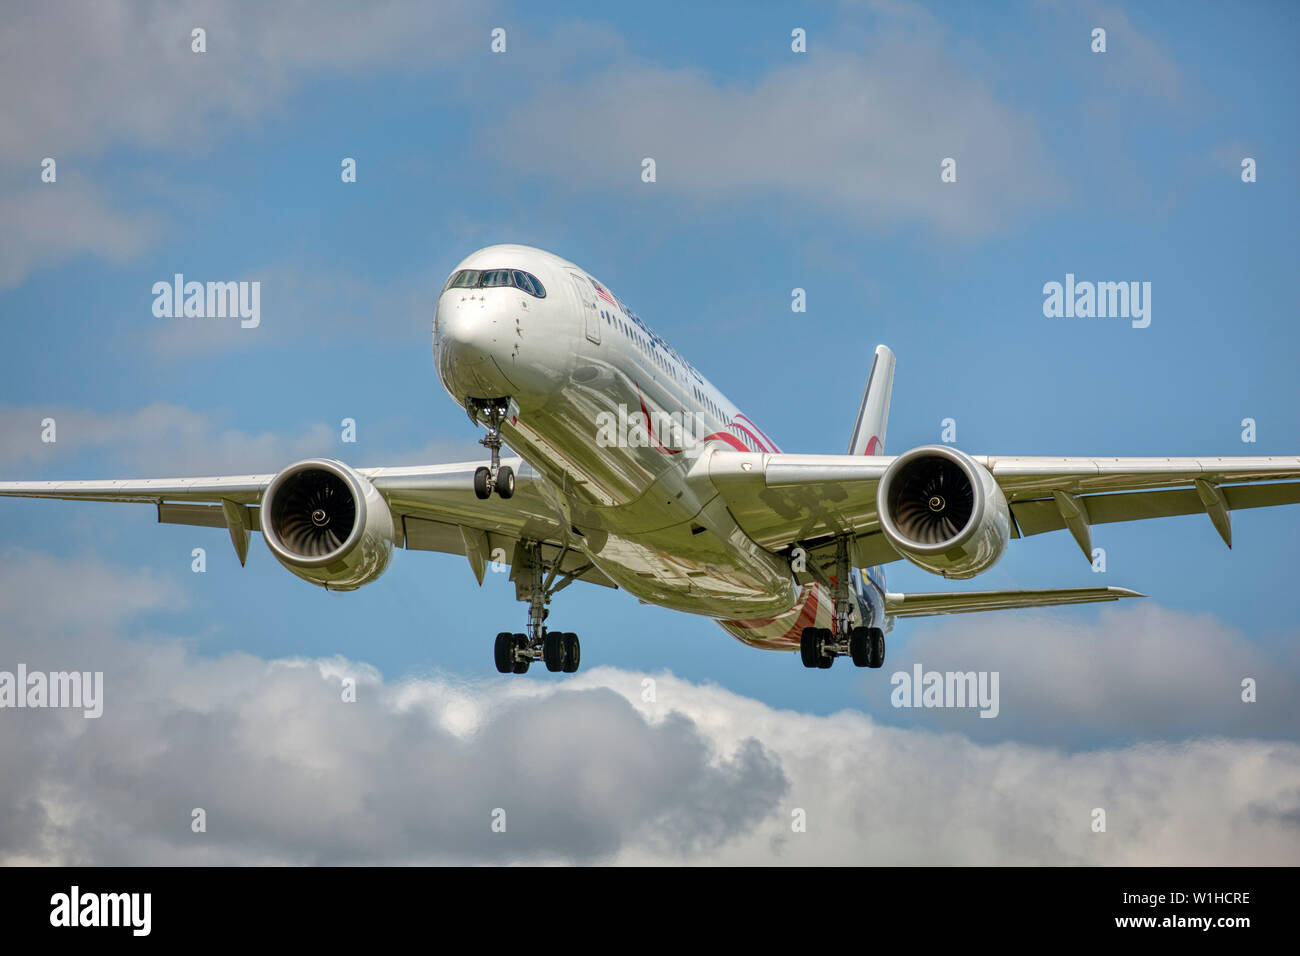 9M-MAG Malaysia Airlines Airbus A350-900 llegando a aterrizar en el aeropuerto Heathrow de Londres Foto de stock